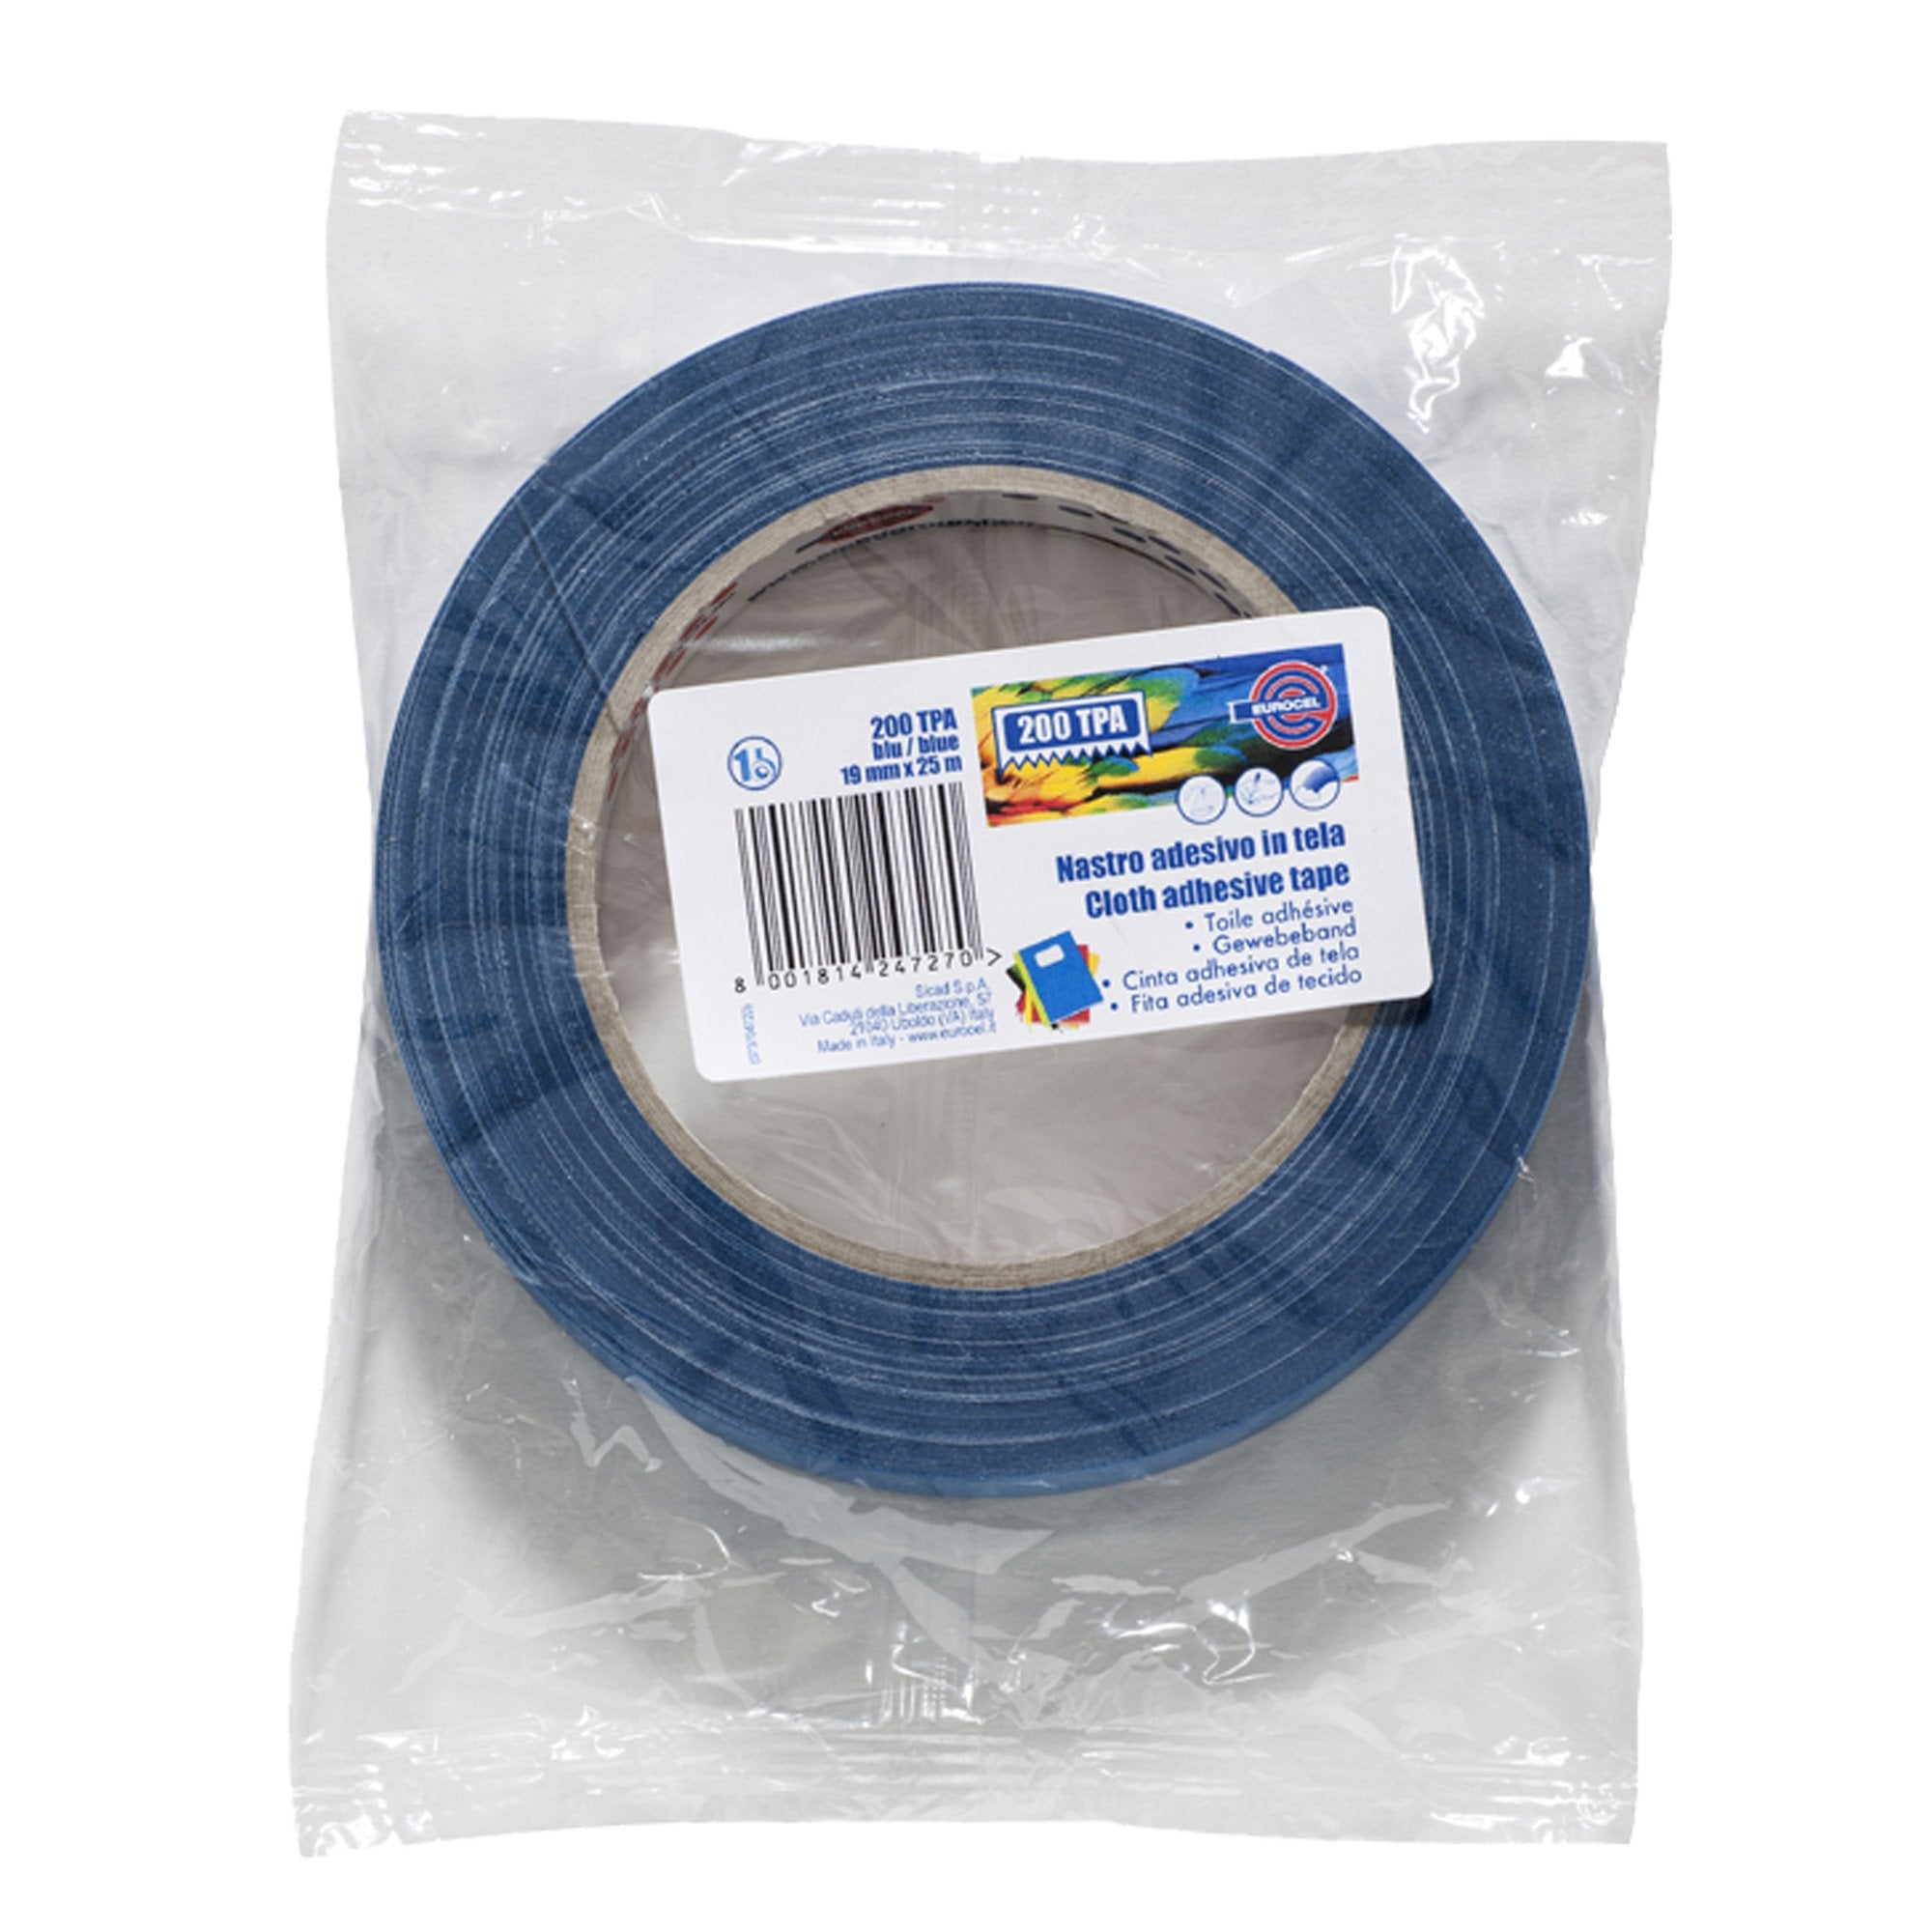 eurocel-nastro-adesivo-telato-tpa-200-19mmx25mt-blu